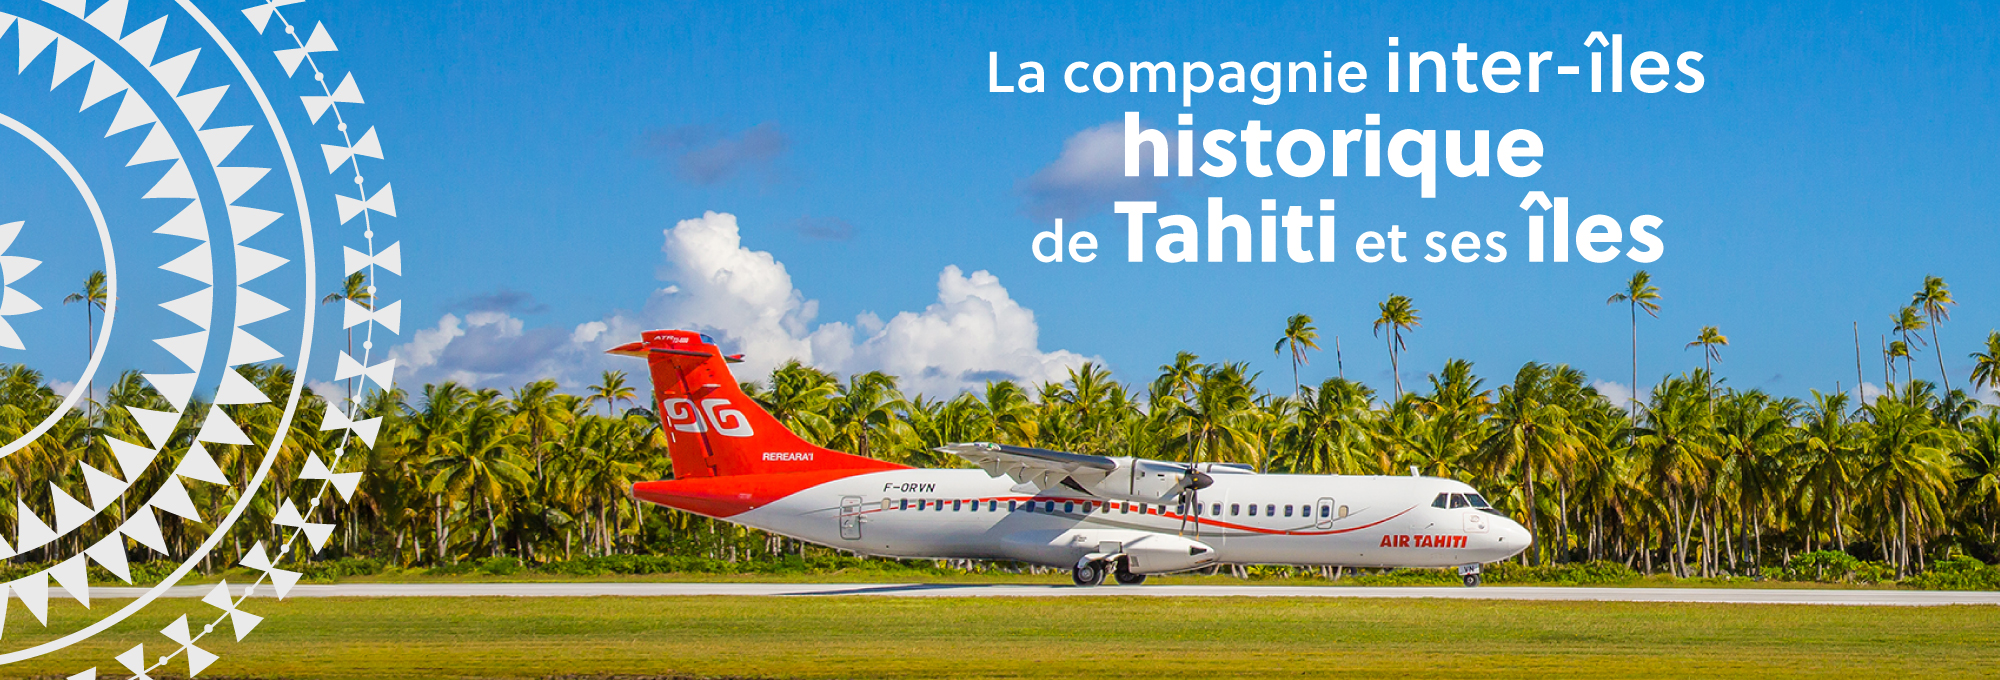 La compagnie historique inter-îles de Tahiti et ses îles